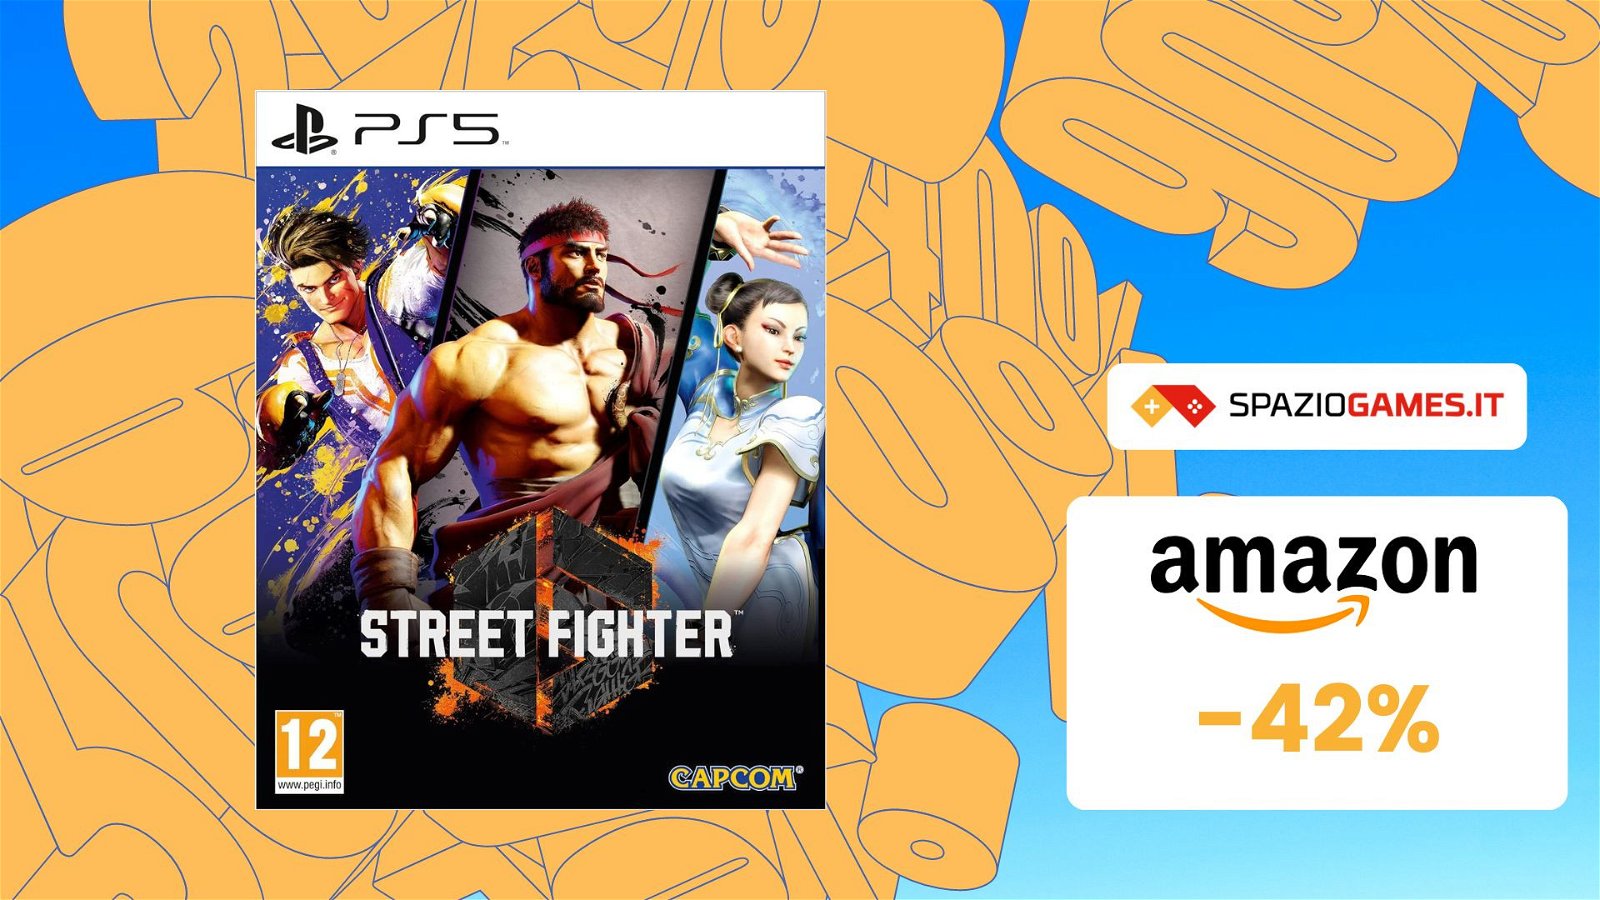 Street Fighter 6 Steelbook Edition, CHE PREZZO! Su Amazon risparmi il 42%!